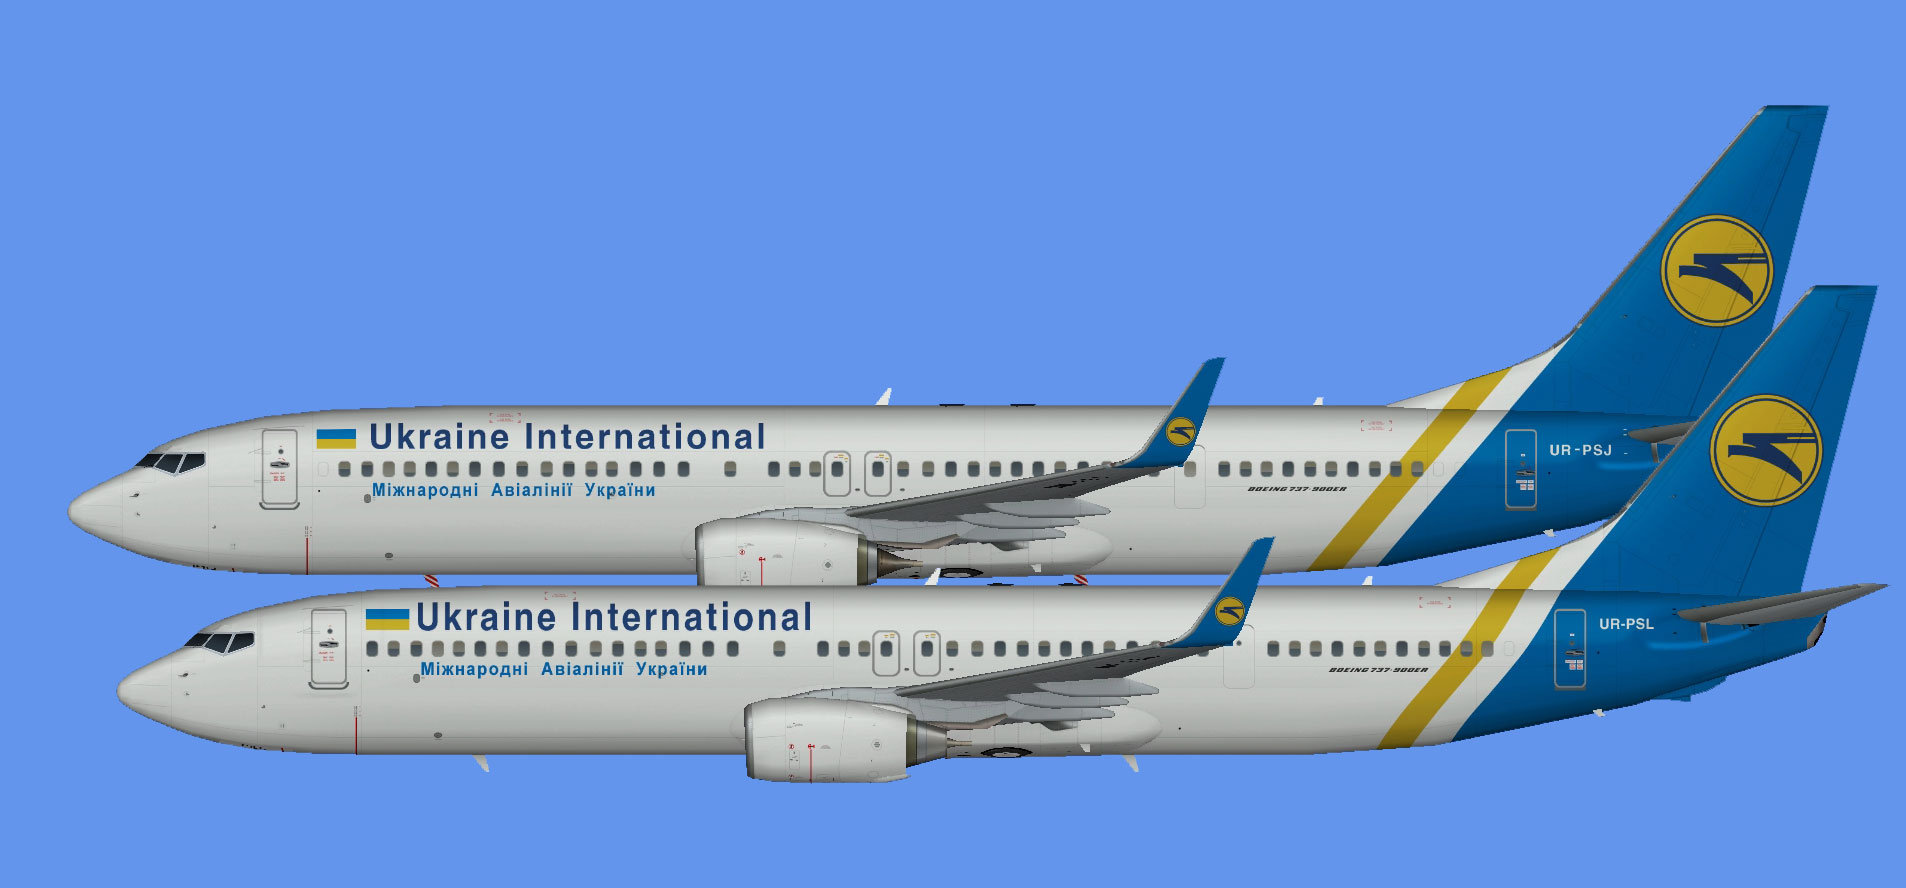 Ukraine Intl 737-900ER update